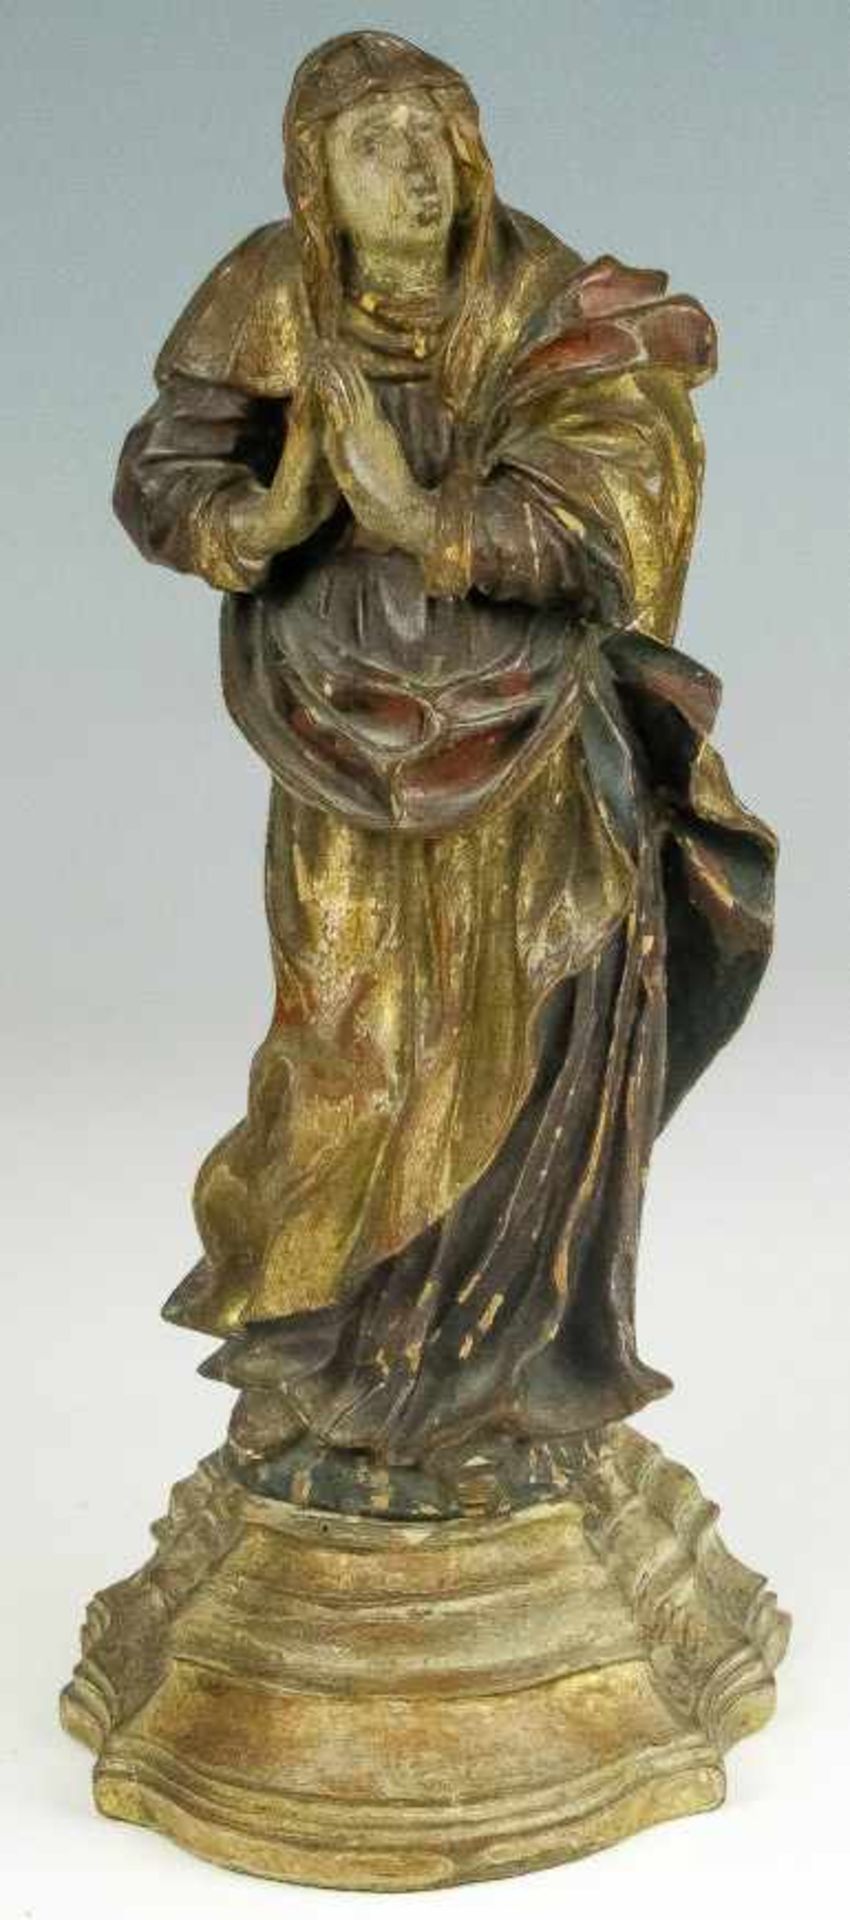 Süddeutsch (18. Jh.)Maria aus einer KreuzigungsgruppeHolz, geschnitzt und gefasst. Auf barockem